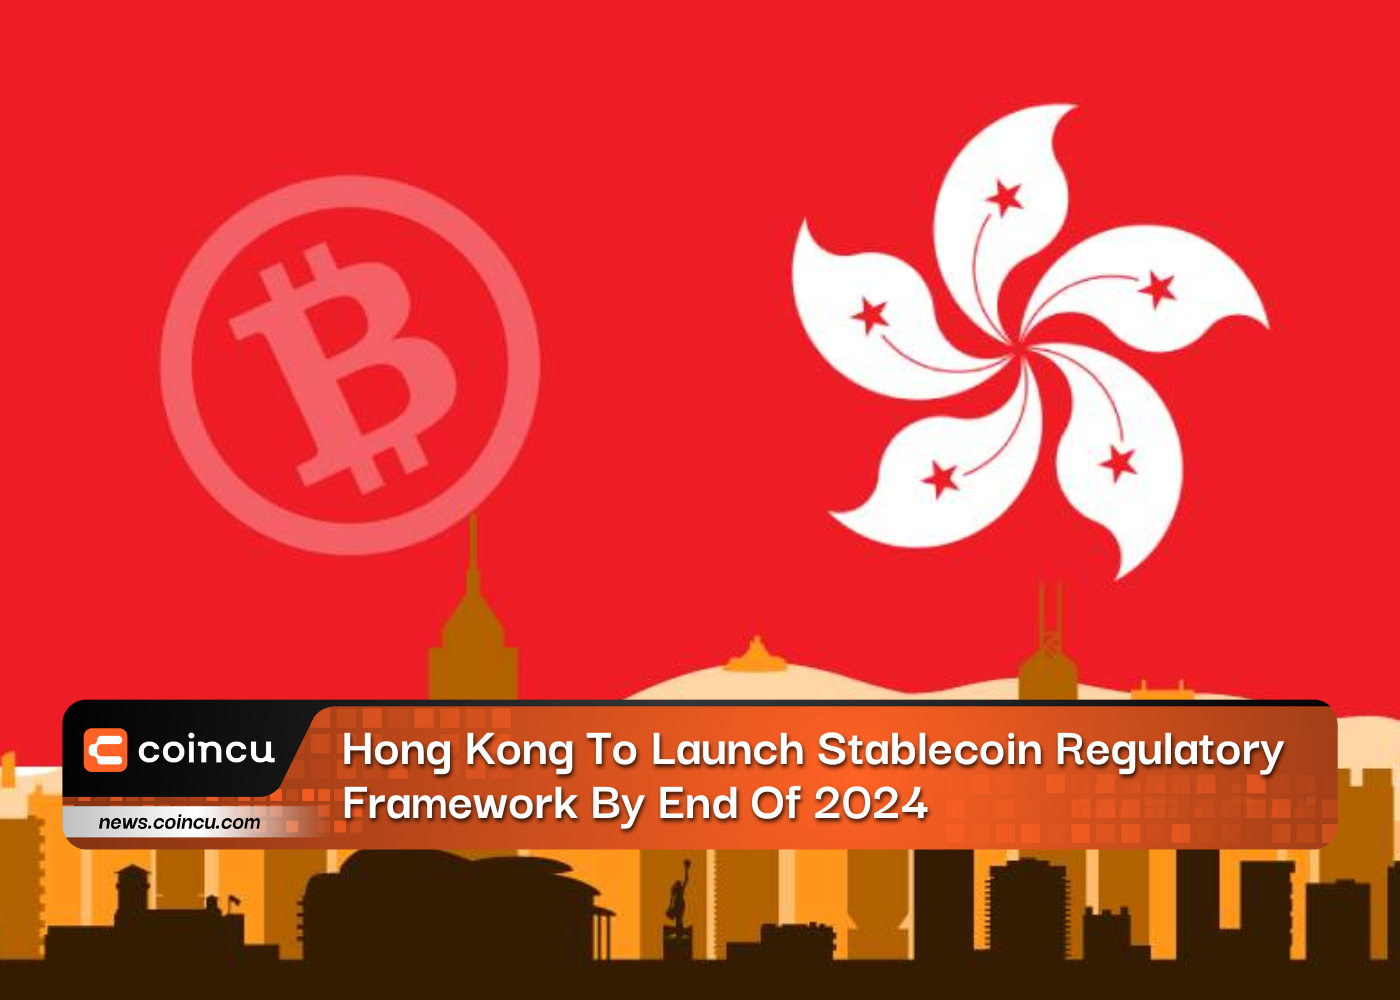 香港将于 2024 年底推出稳定币监管框架